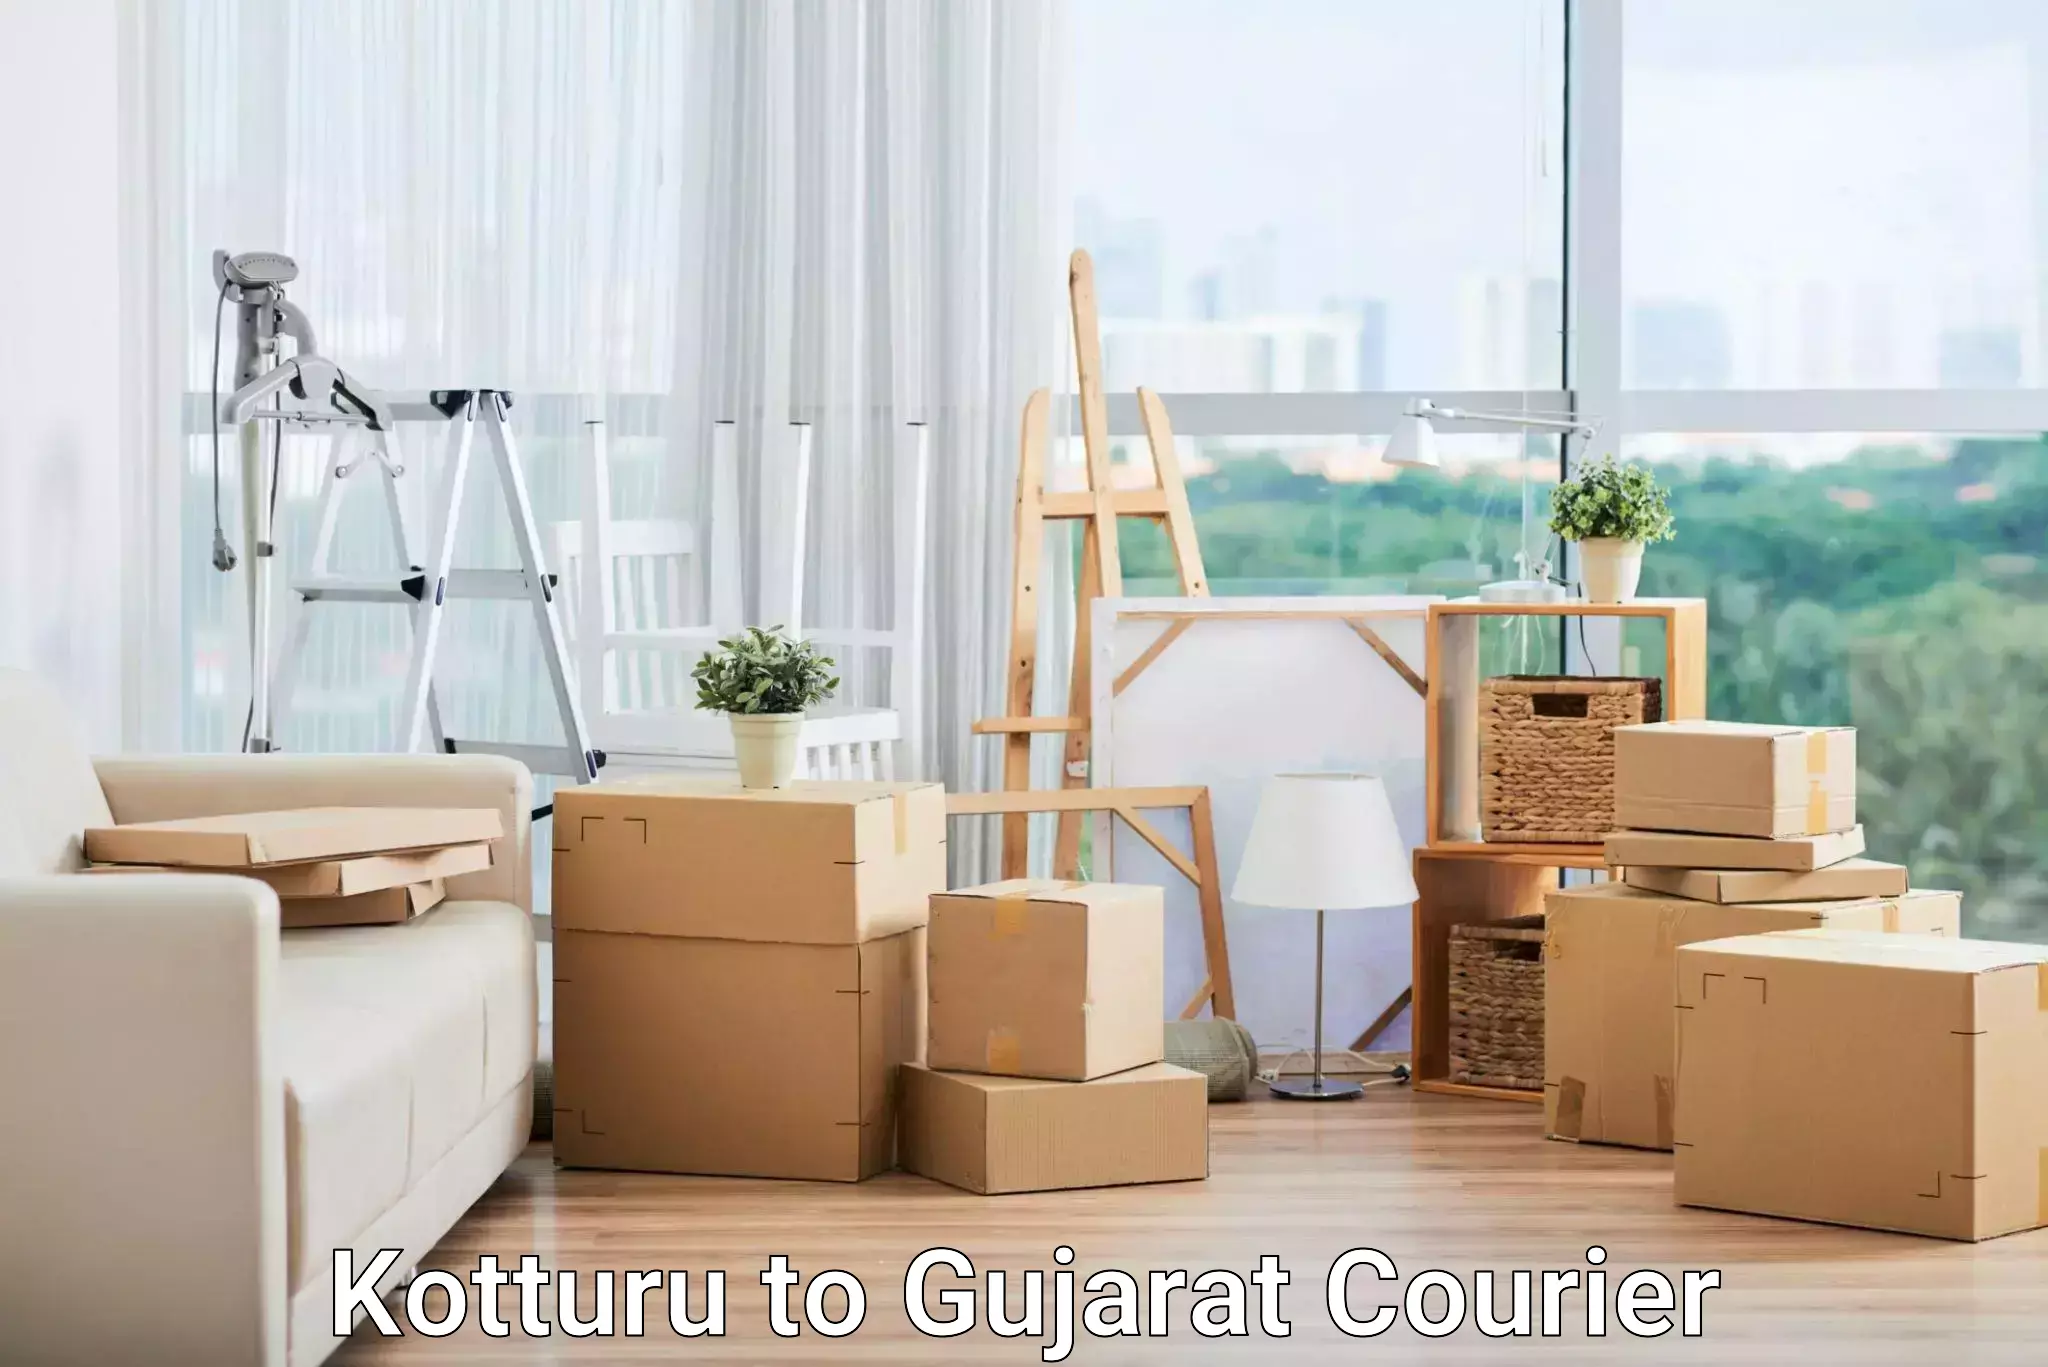 Express delivery solutions Kotturu to Narmada Gujarat